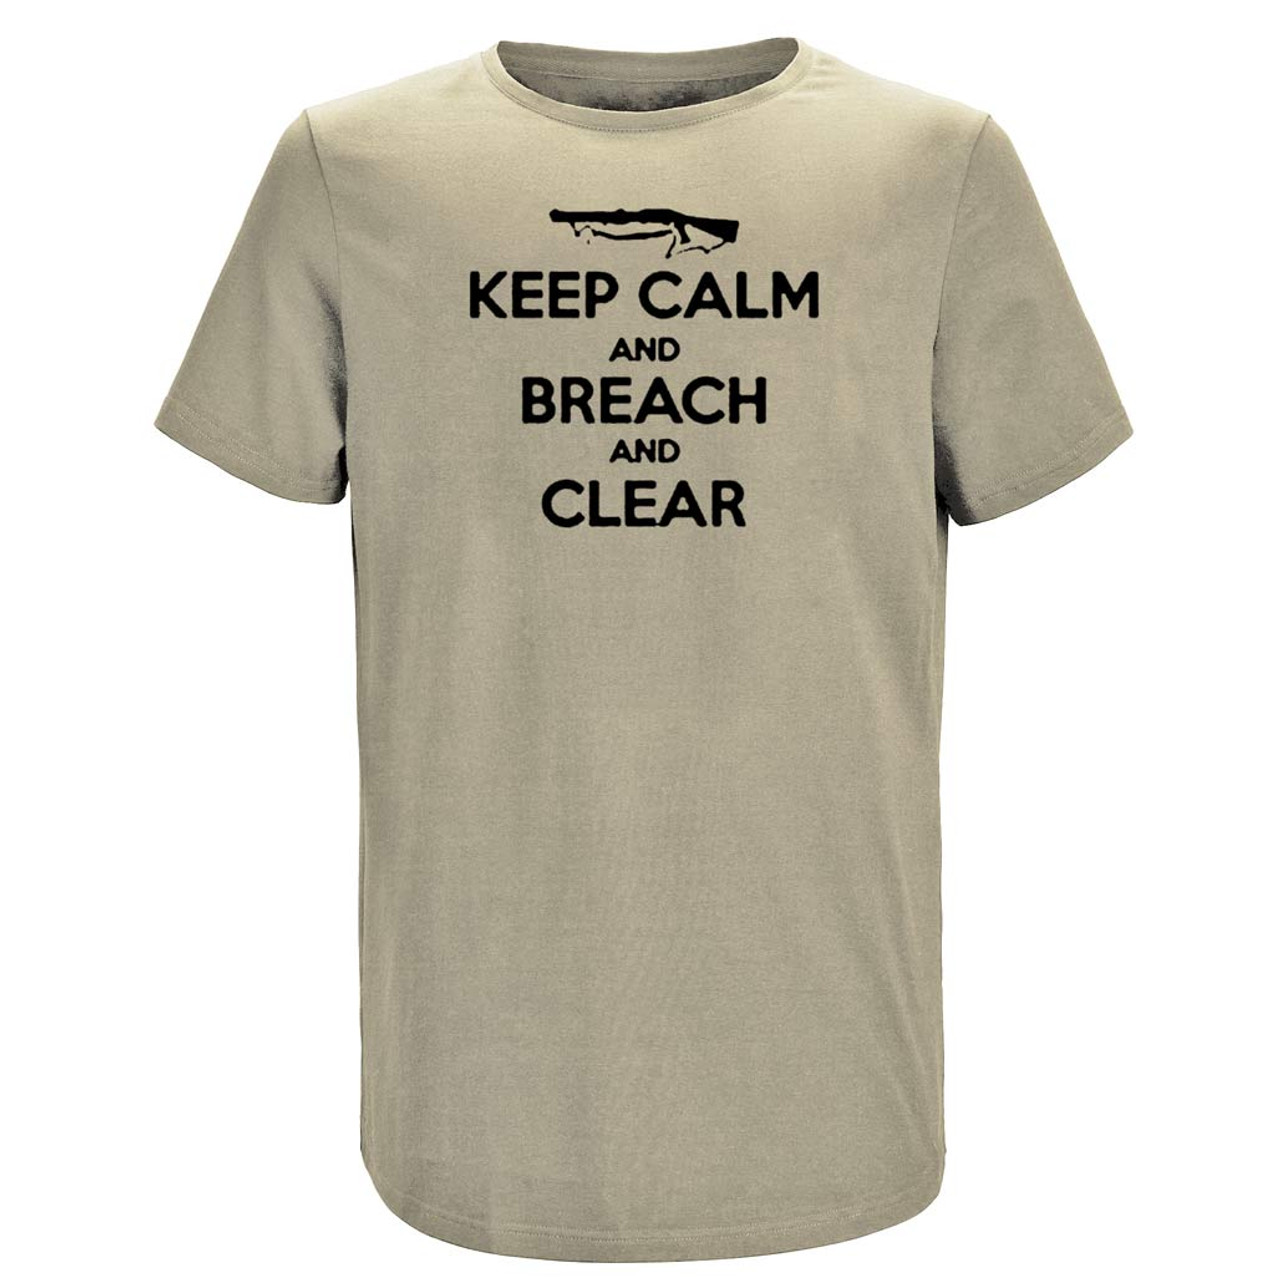 keep calm breach clear performance tshirt